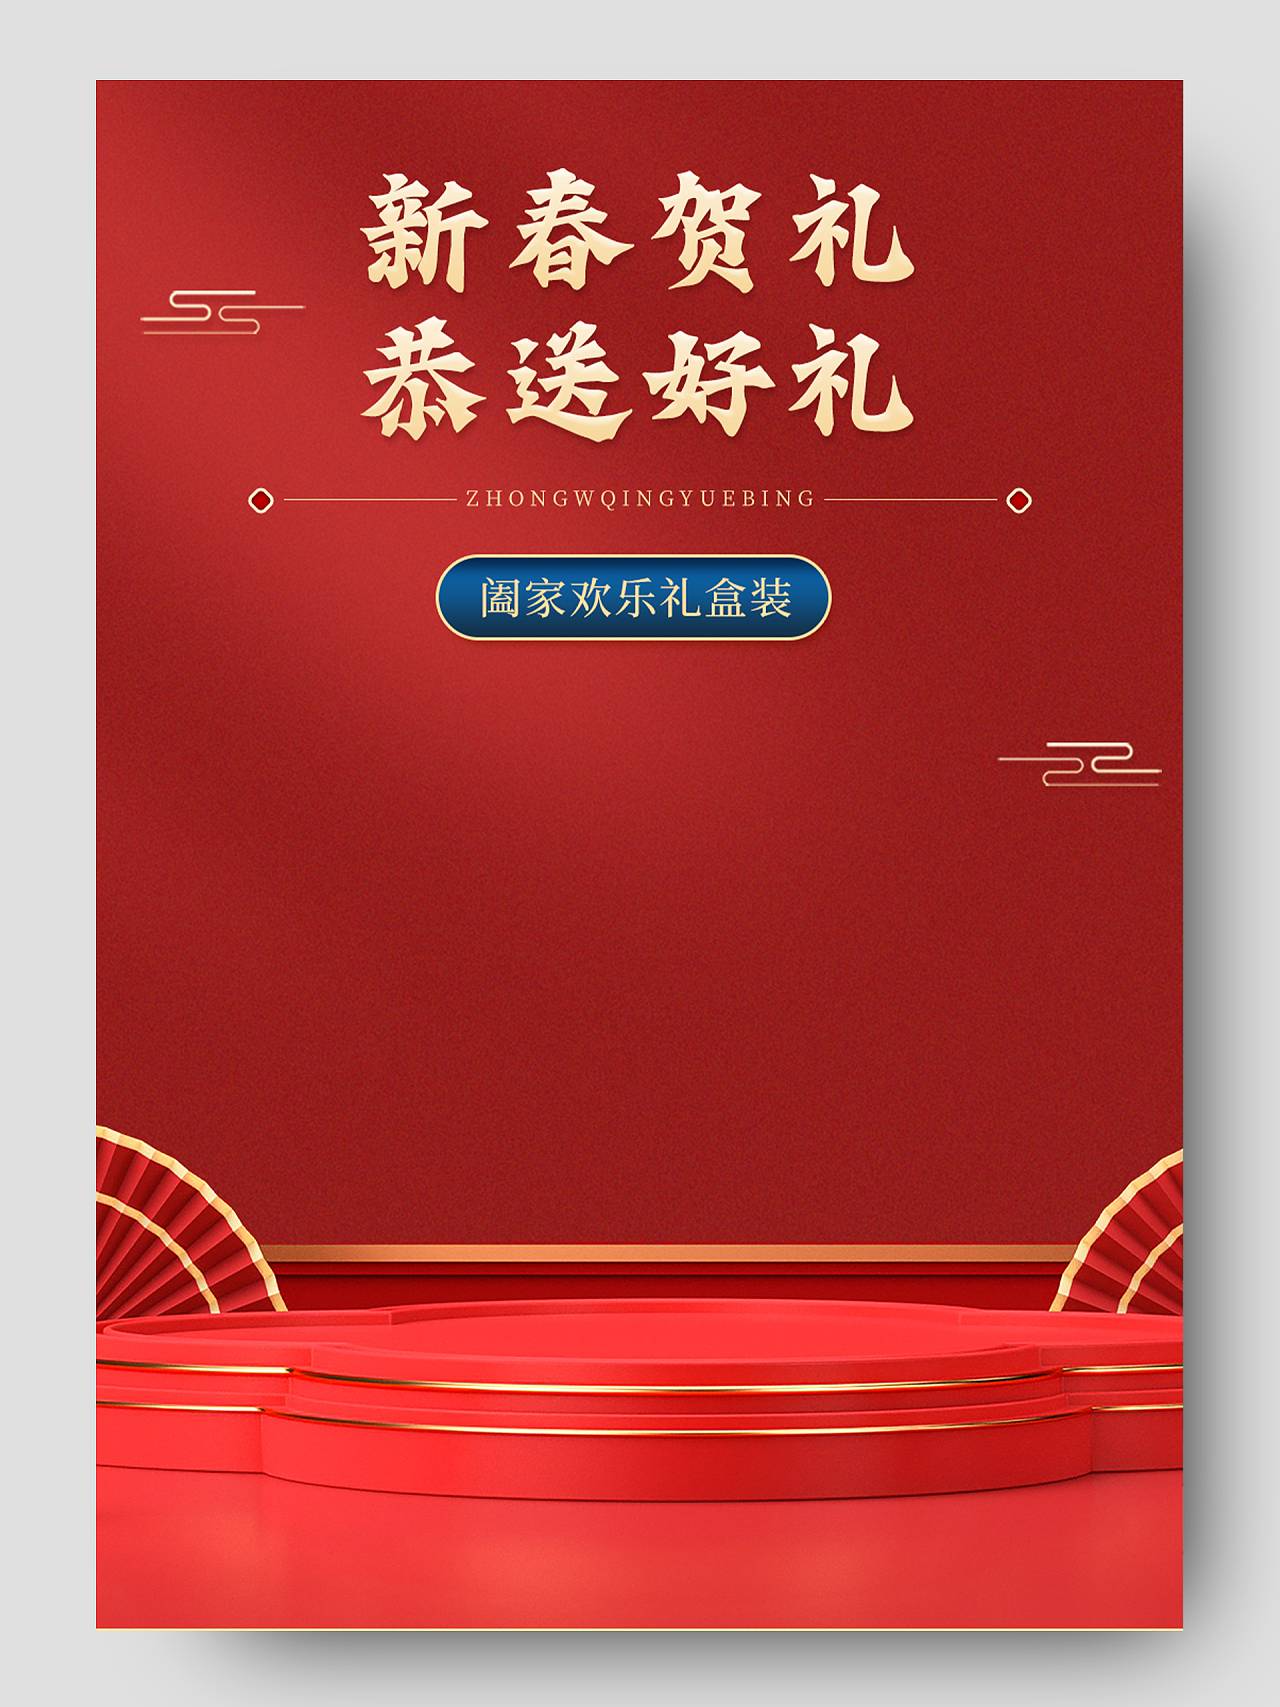 红色中国风新年礼盒红包喜庆年货节详情页